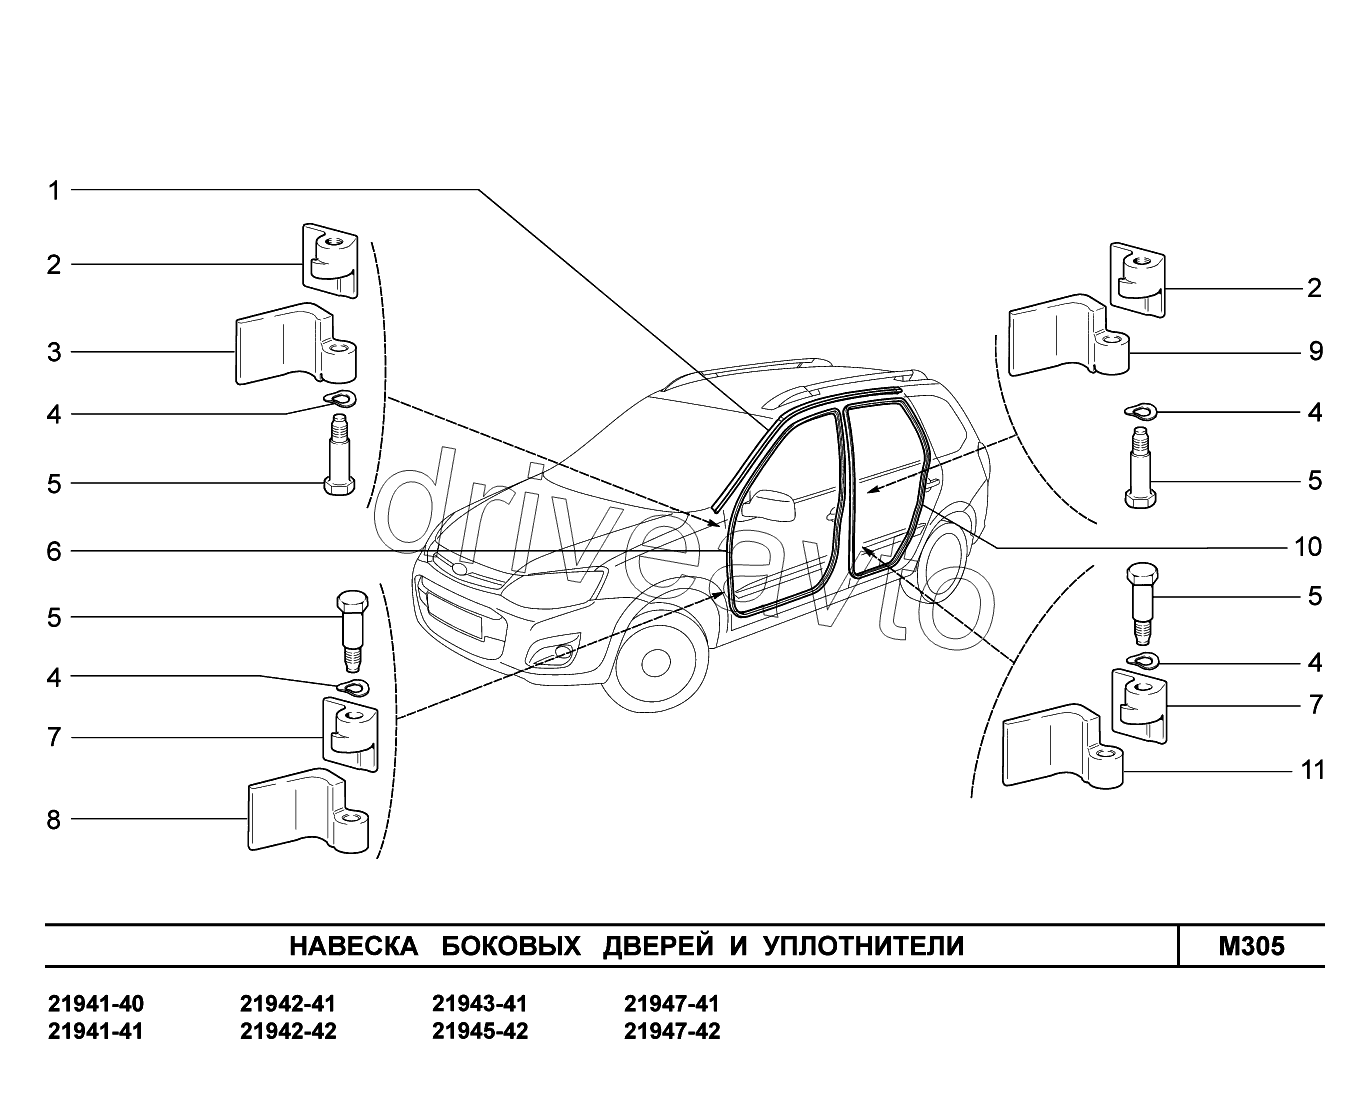 M305. Навеска боковых дверей и уплотнители